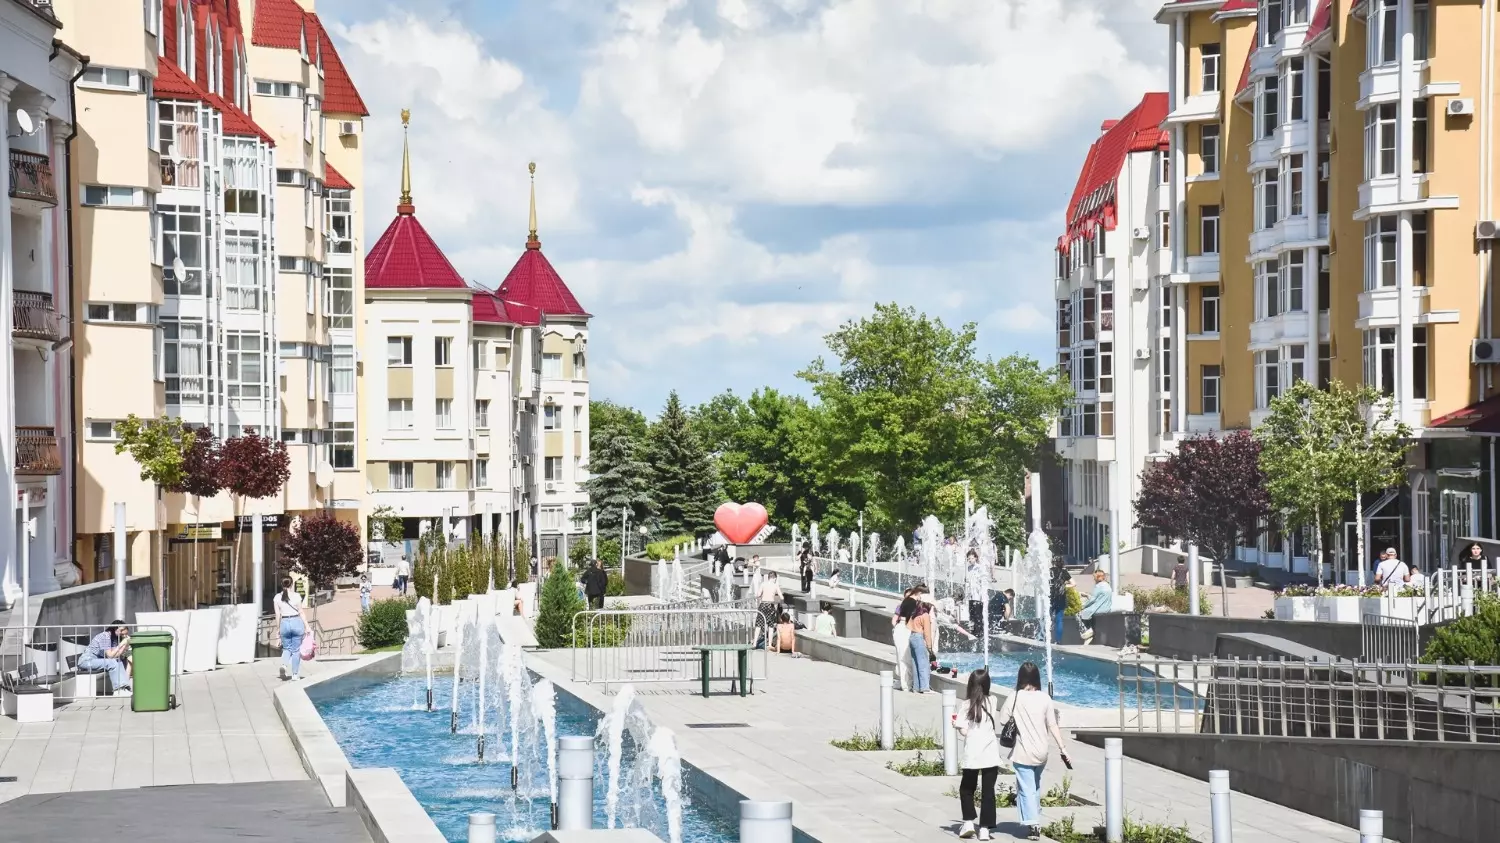 По словам риелтора Татьяны Филипповой, наиболее доступные квартиры в Ставрополе расположены в районе Чапаевки, тогда как центр продолжает показывать рекордные цены.